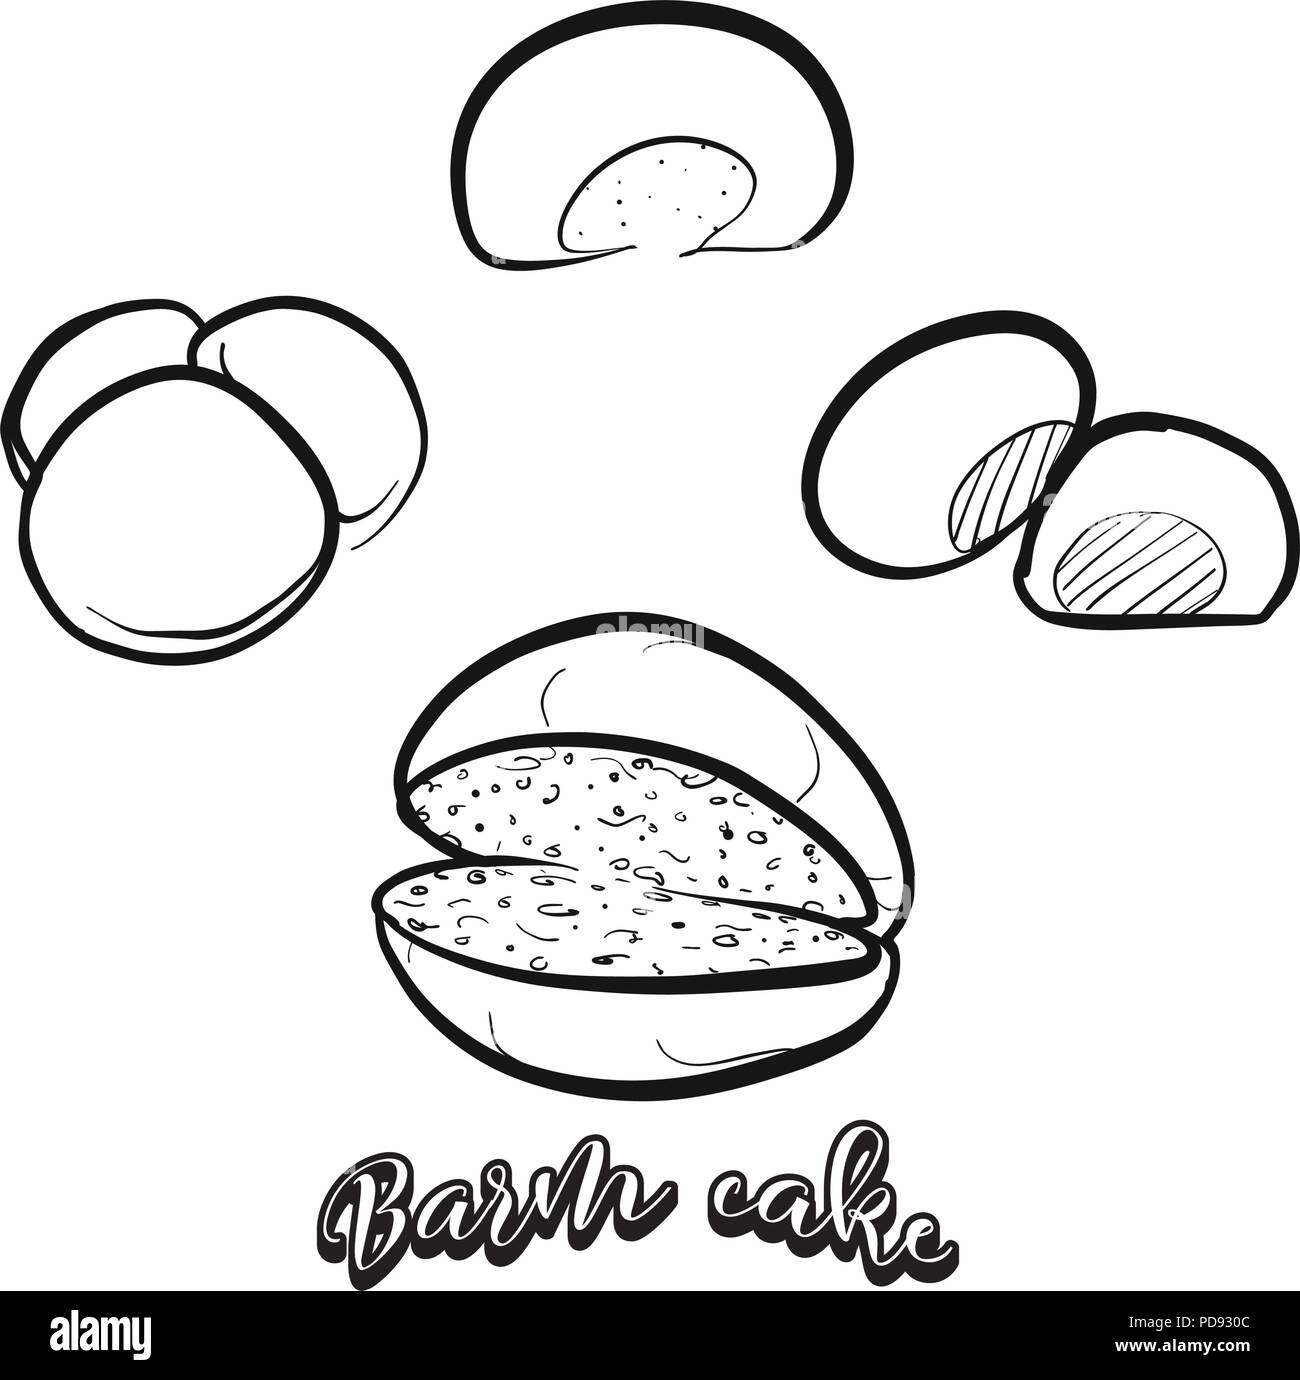 Croquis dessinés à la main de pain gâteau Barm. Dessin vectoriel de la levure alimentaire pain, habituellement connu dans le Lancashire. Illustration du pain series. Illustration de Vecteur